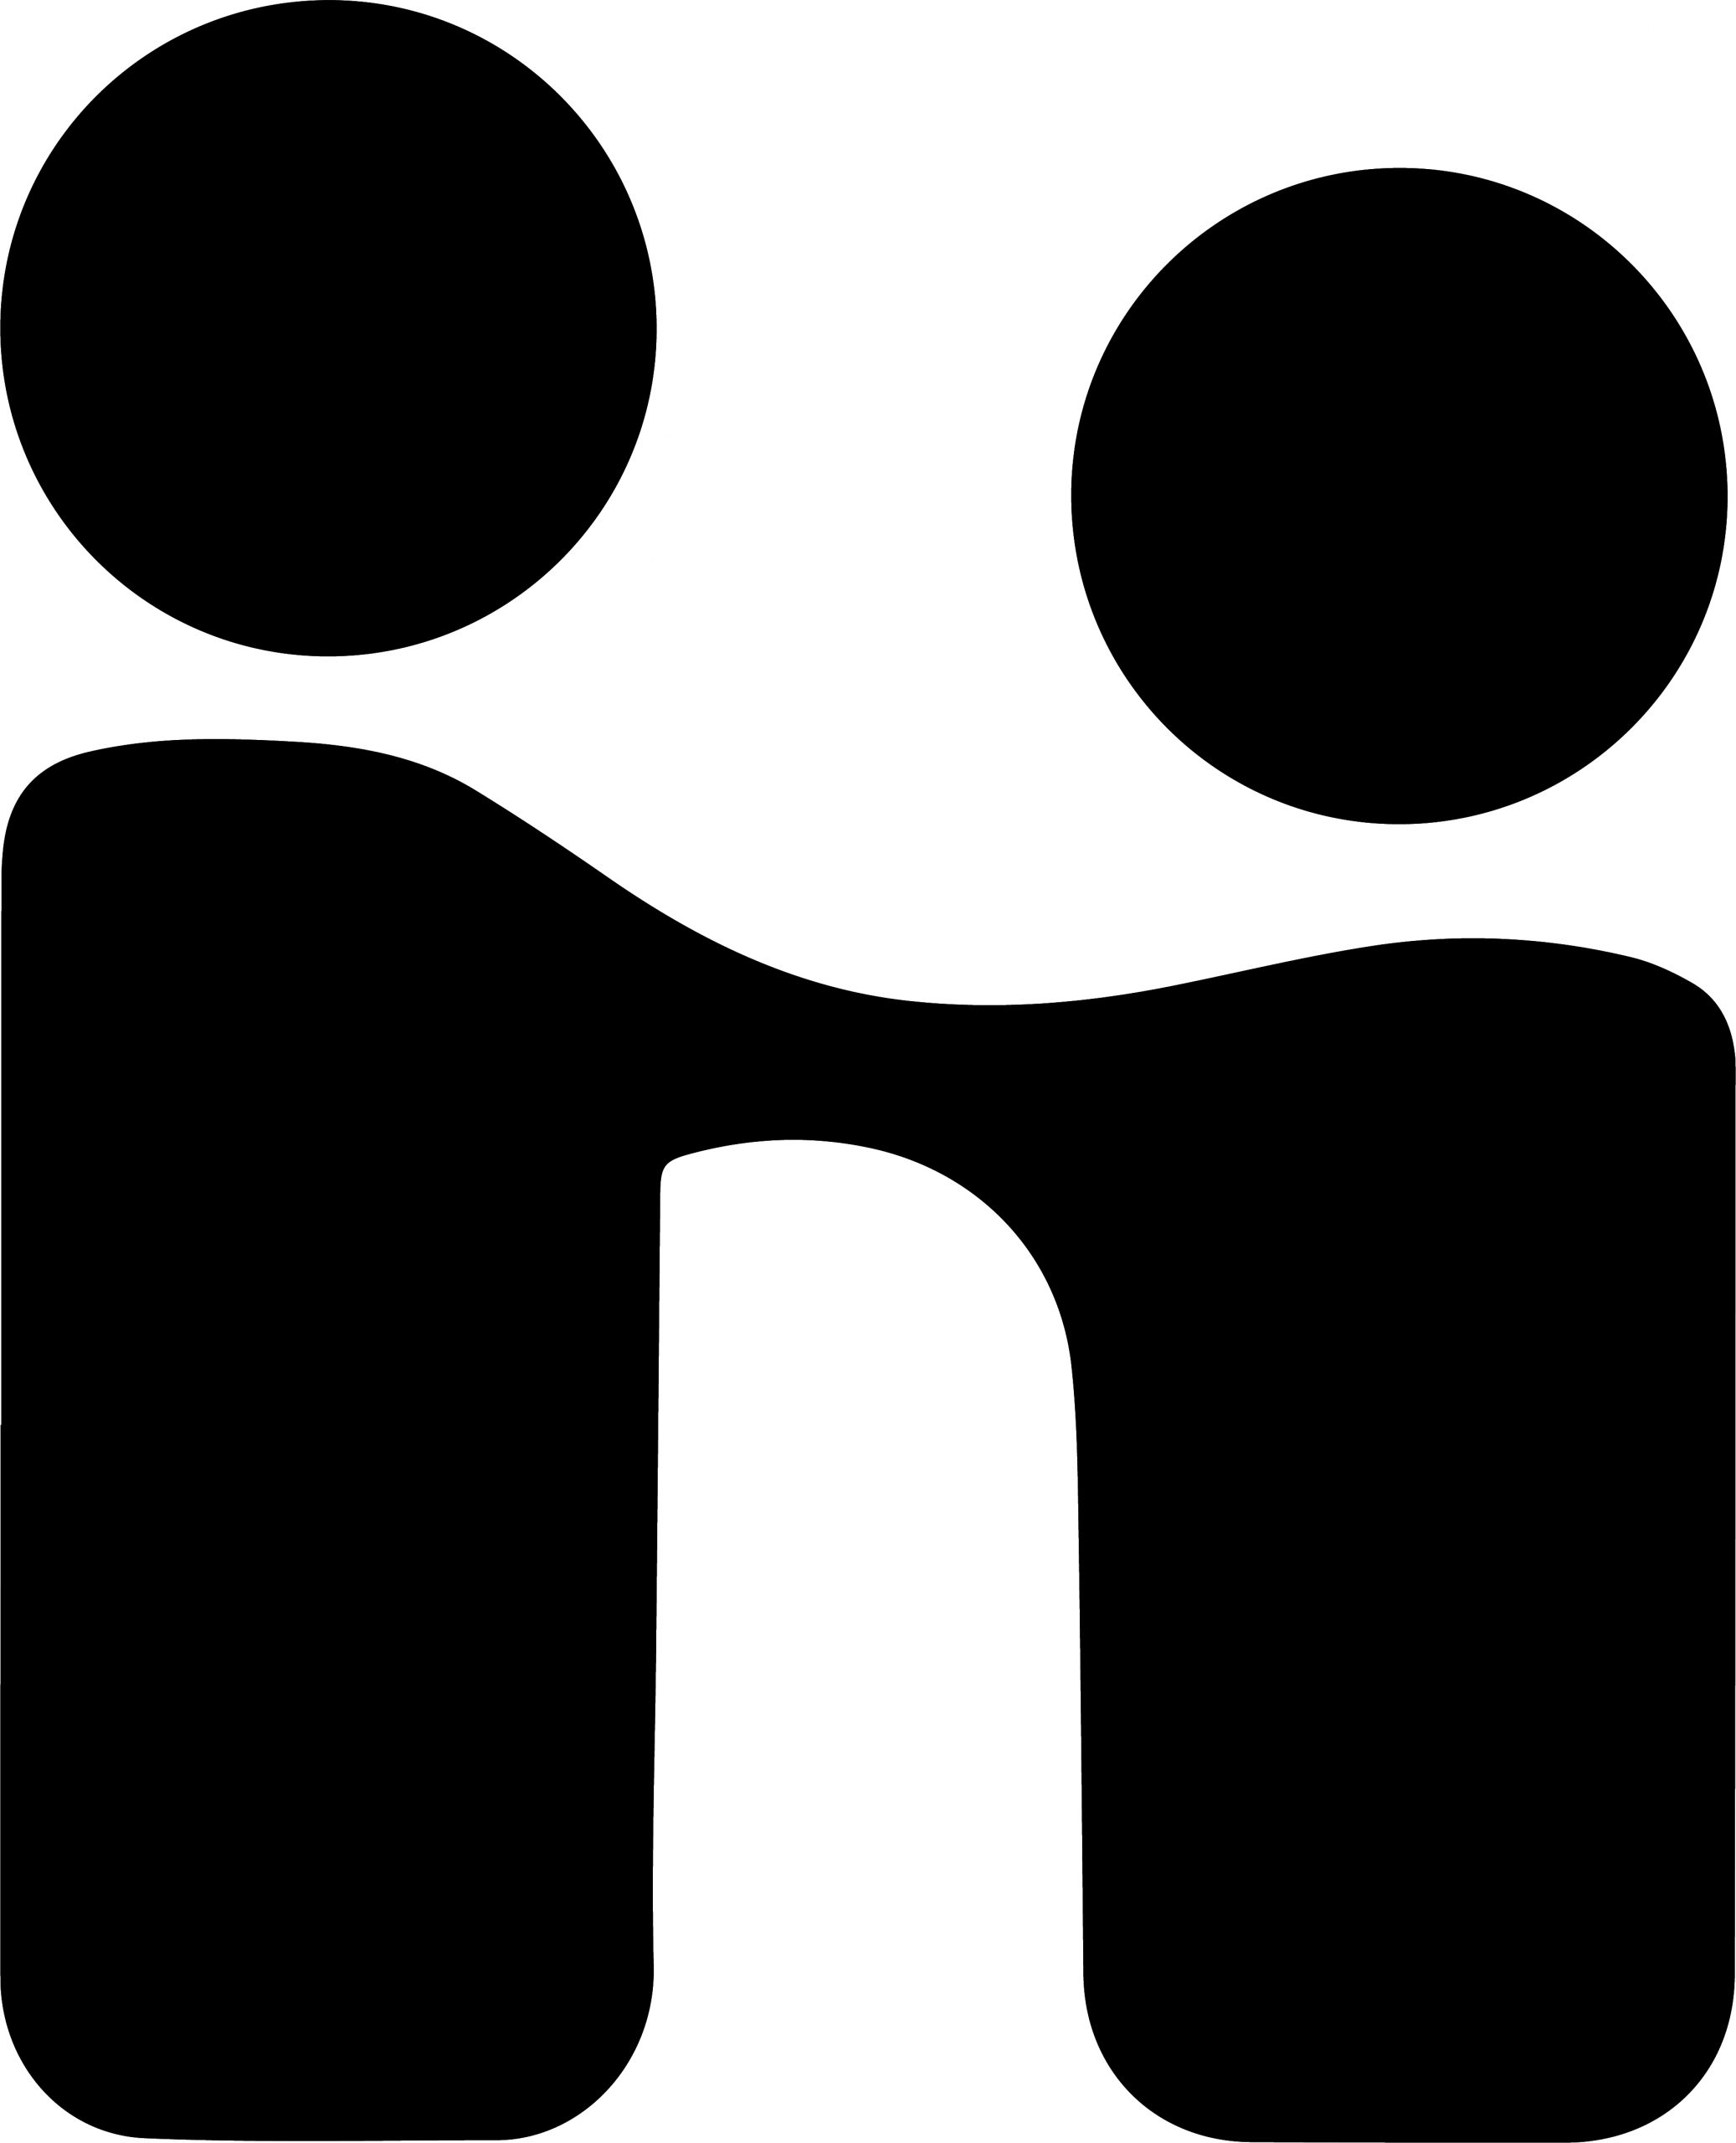 Handshake small logo